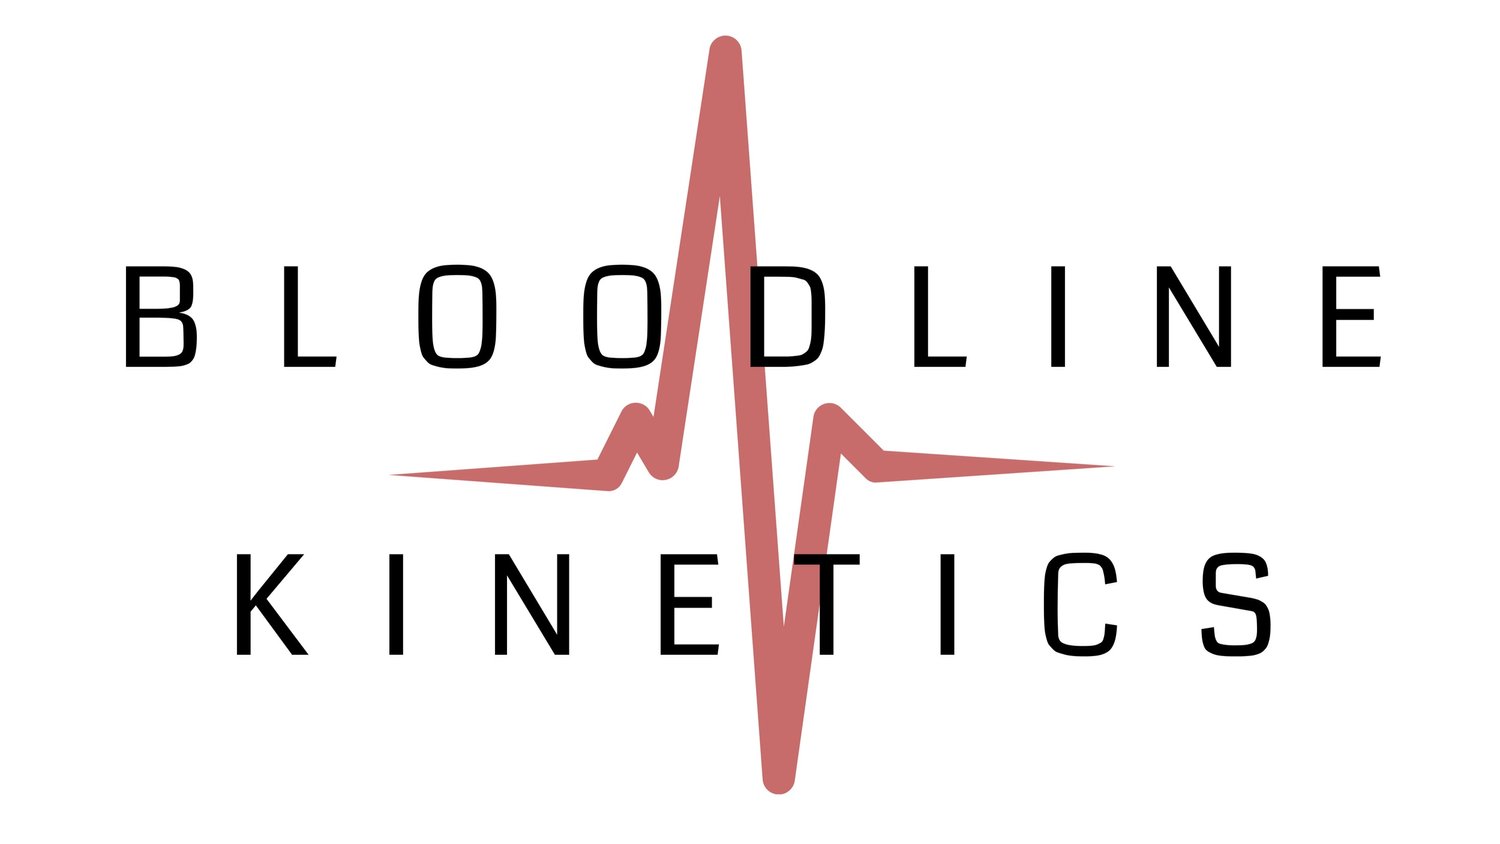 Bloodline kinetics